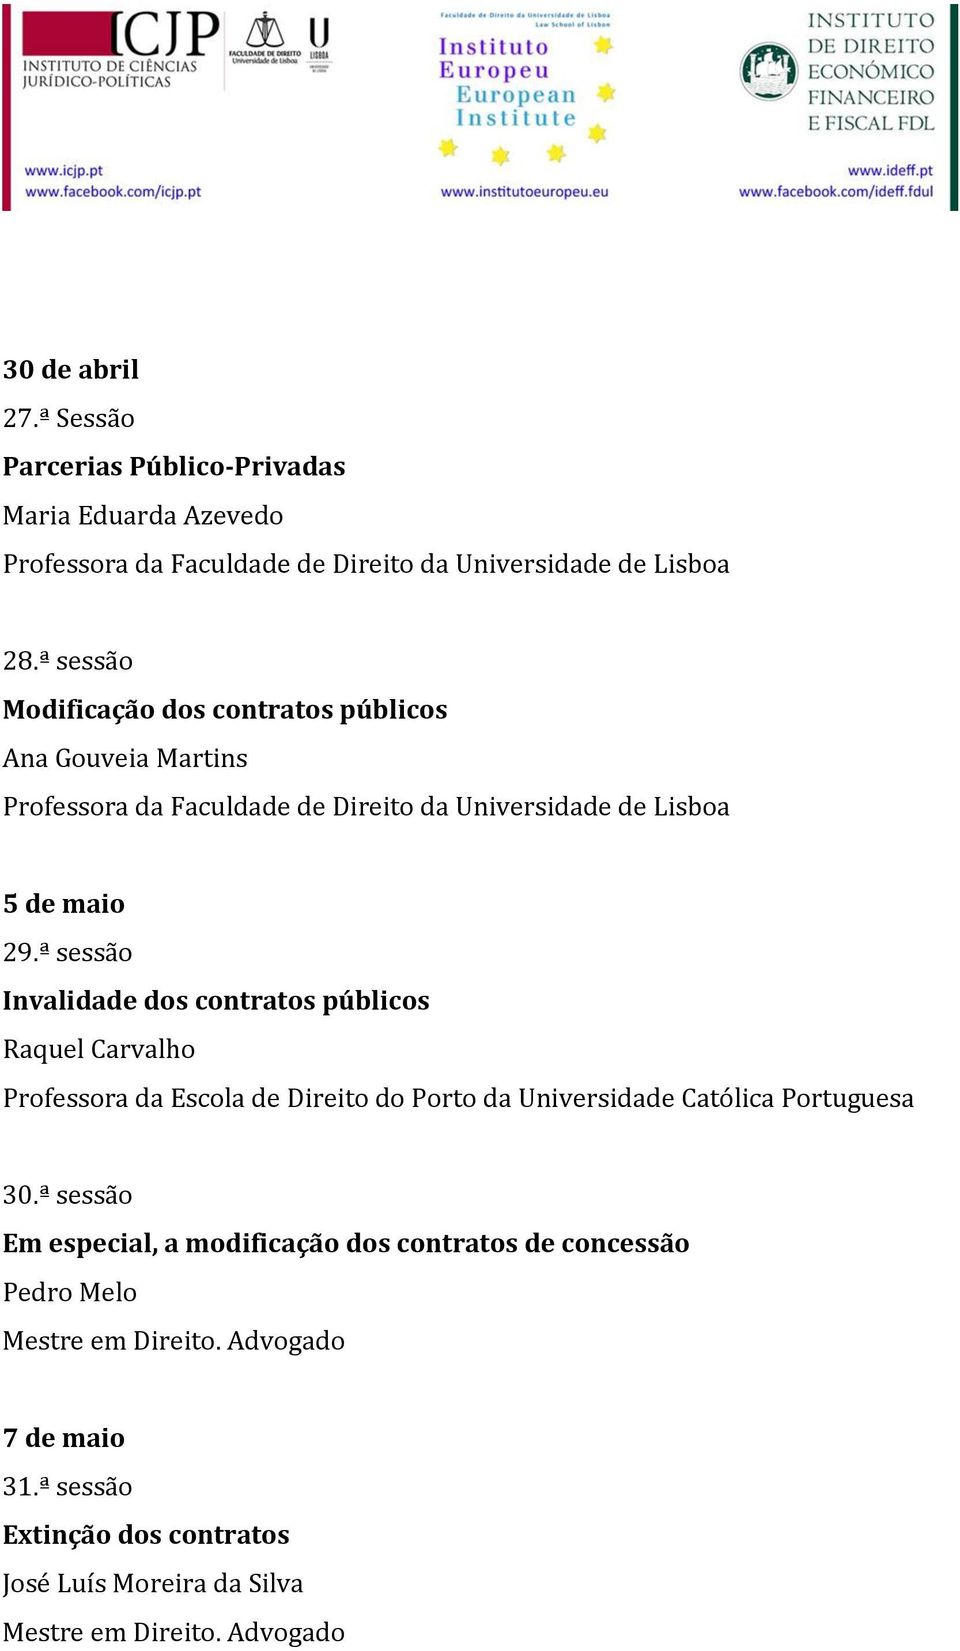 ª sessão Invalidade dos contratos públicos Raquel Carvalho Professora da Escola de Direito do Porto da Universidade